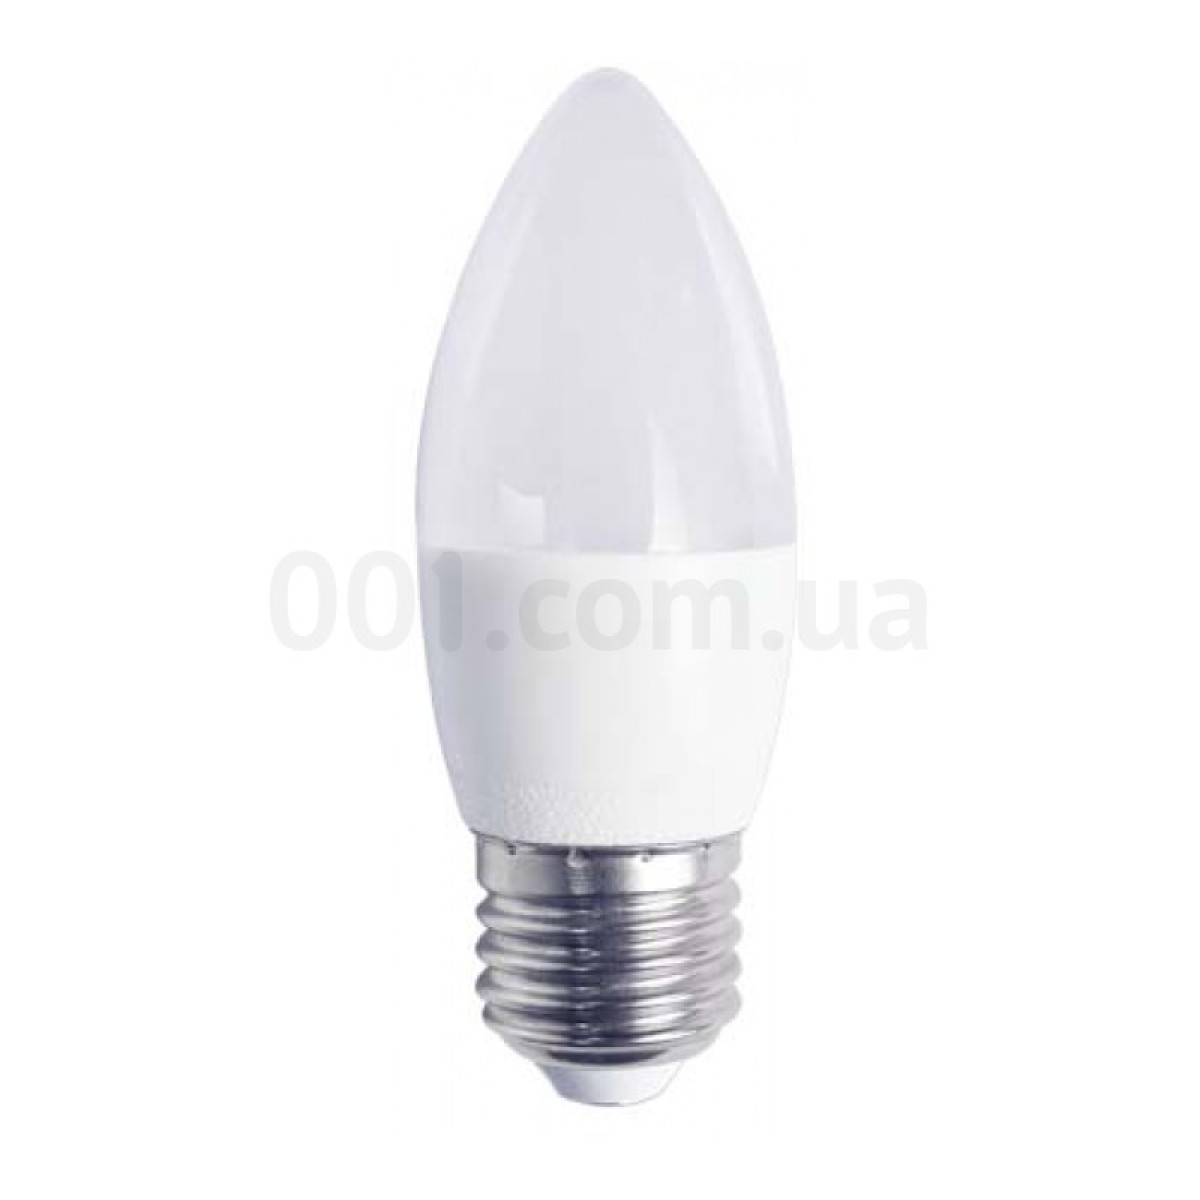 Светодиодная лампа LB-737 C37 (свеча) 6Вт 2700K E27, Feron 256_256.jpg